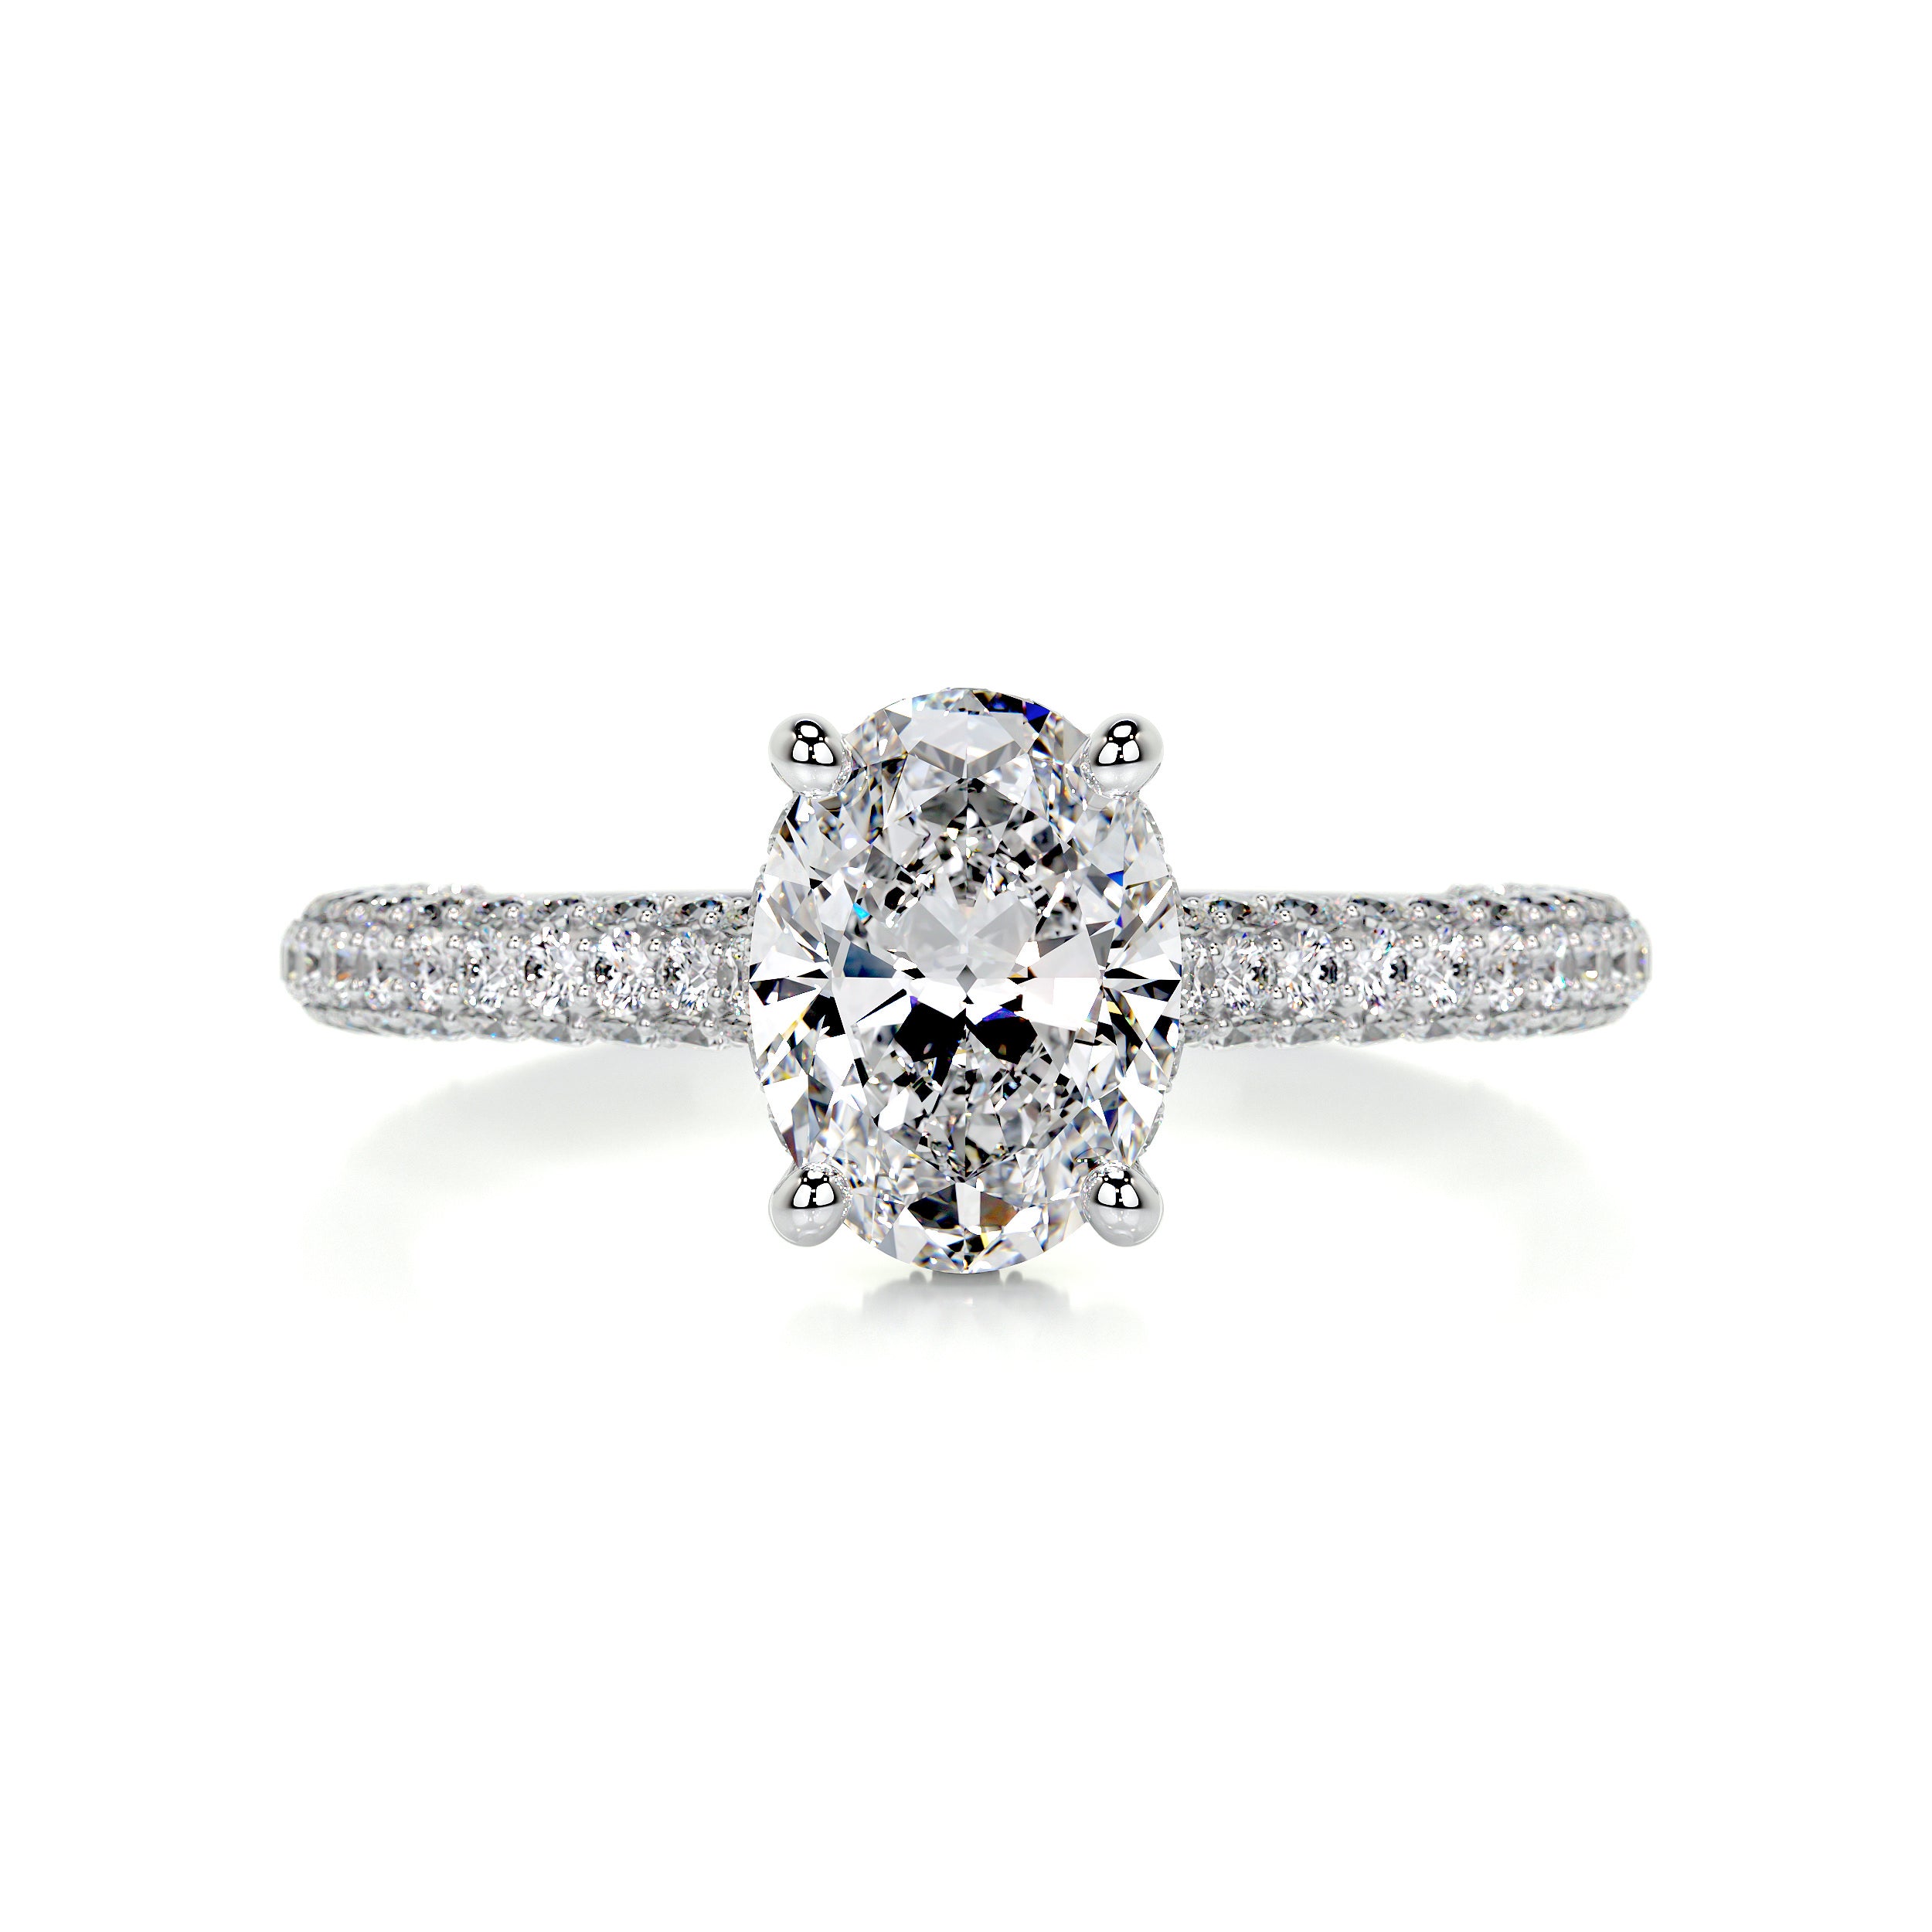 Rebecca Diamond Engagement Ring   (2.5 Carat) -Platinum